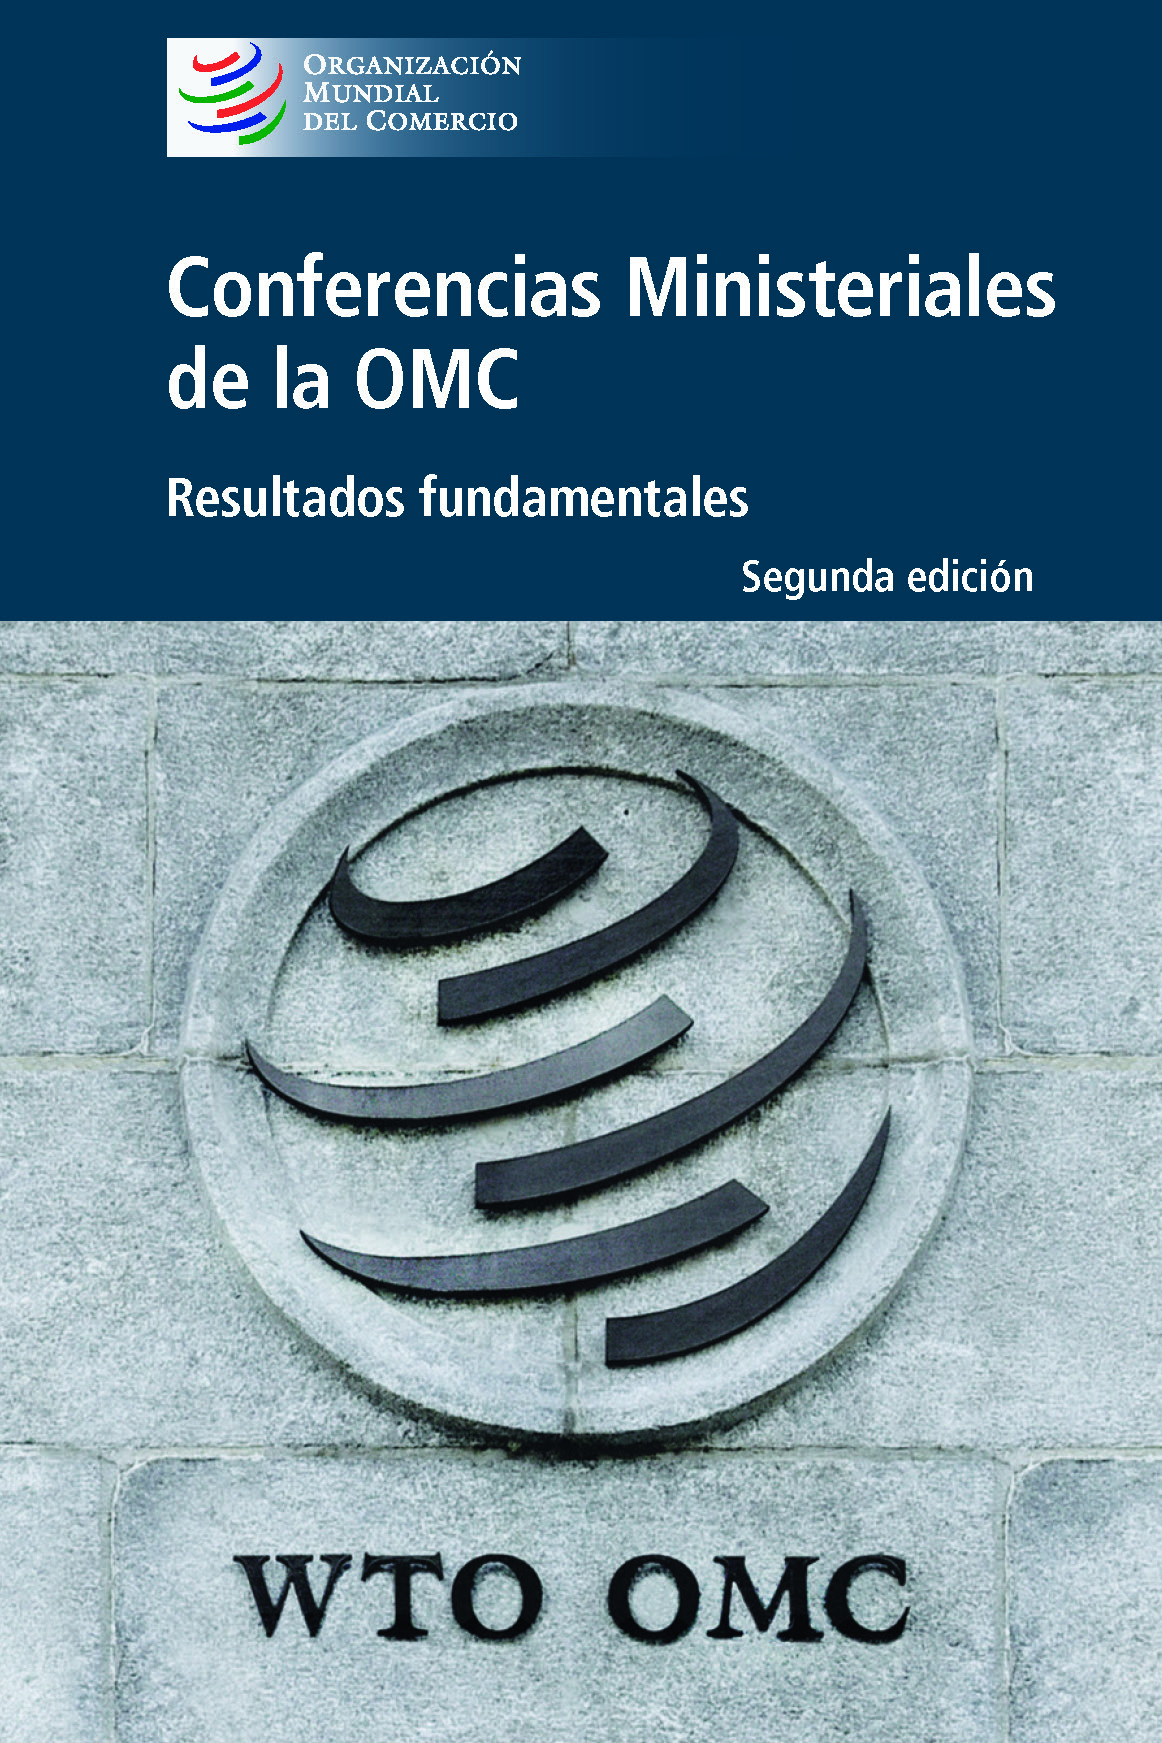 image of Duodécima conferencia ministerialde la OMC (CM12)